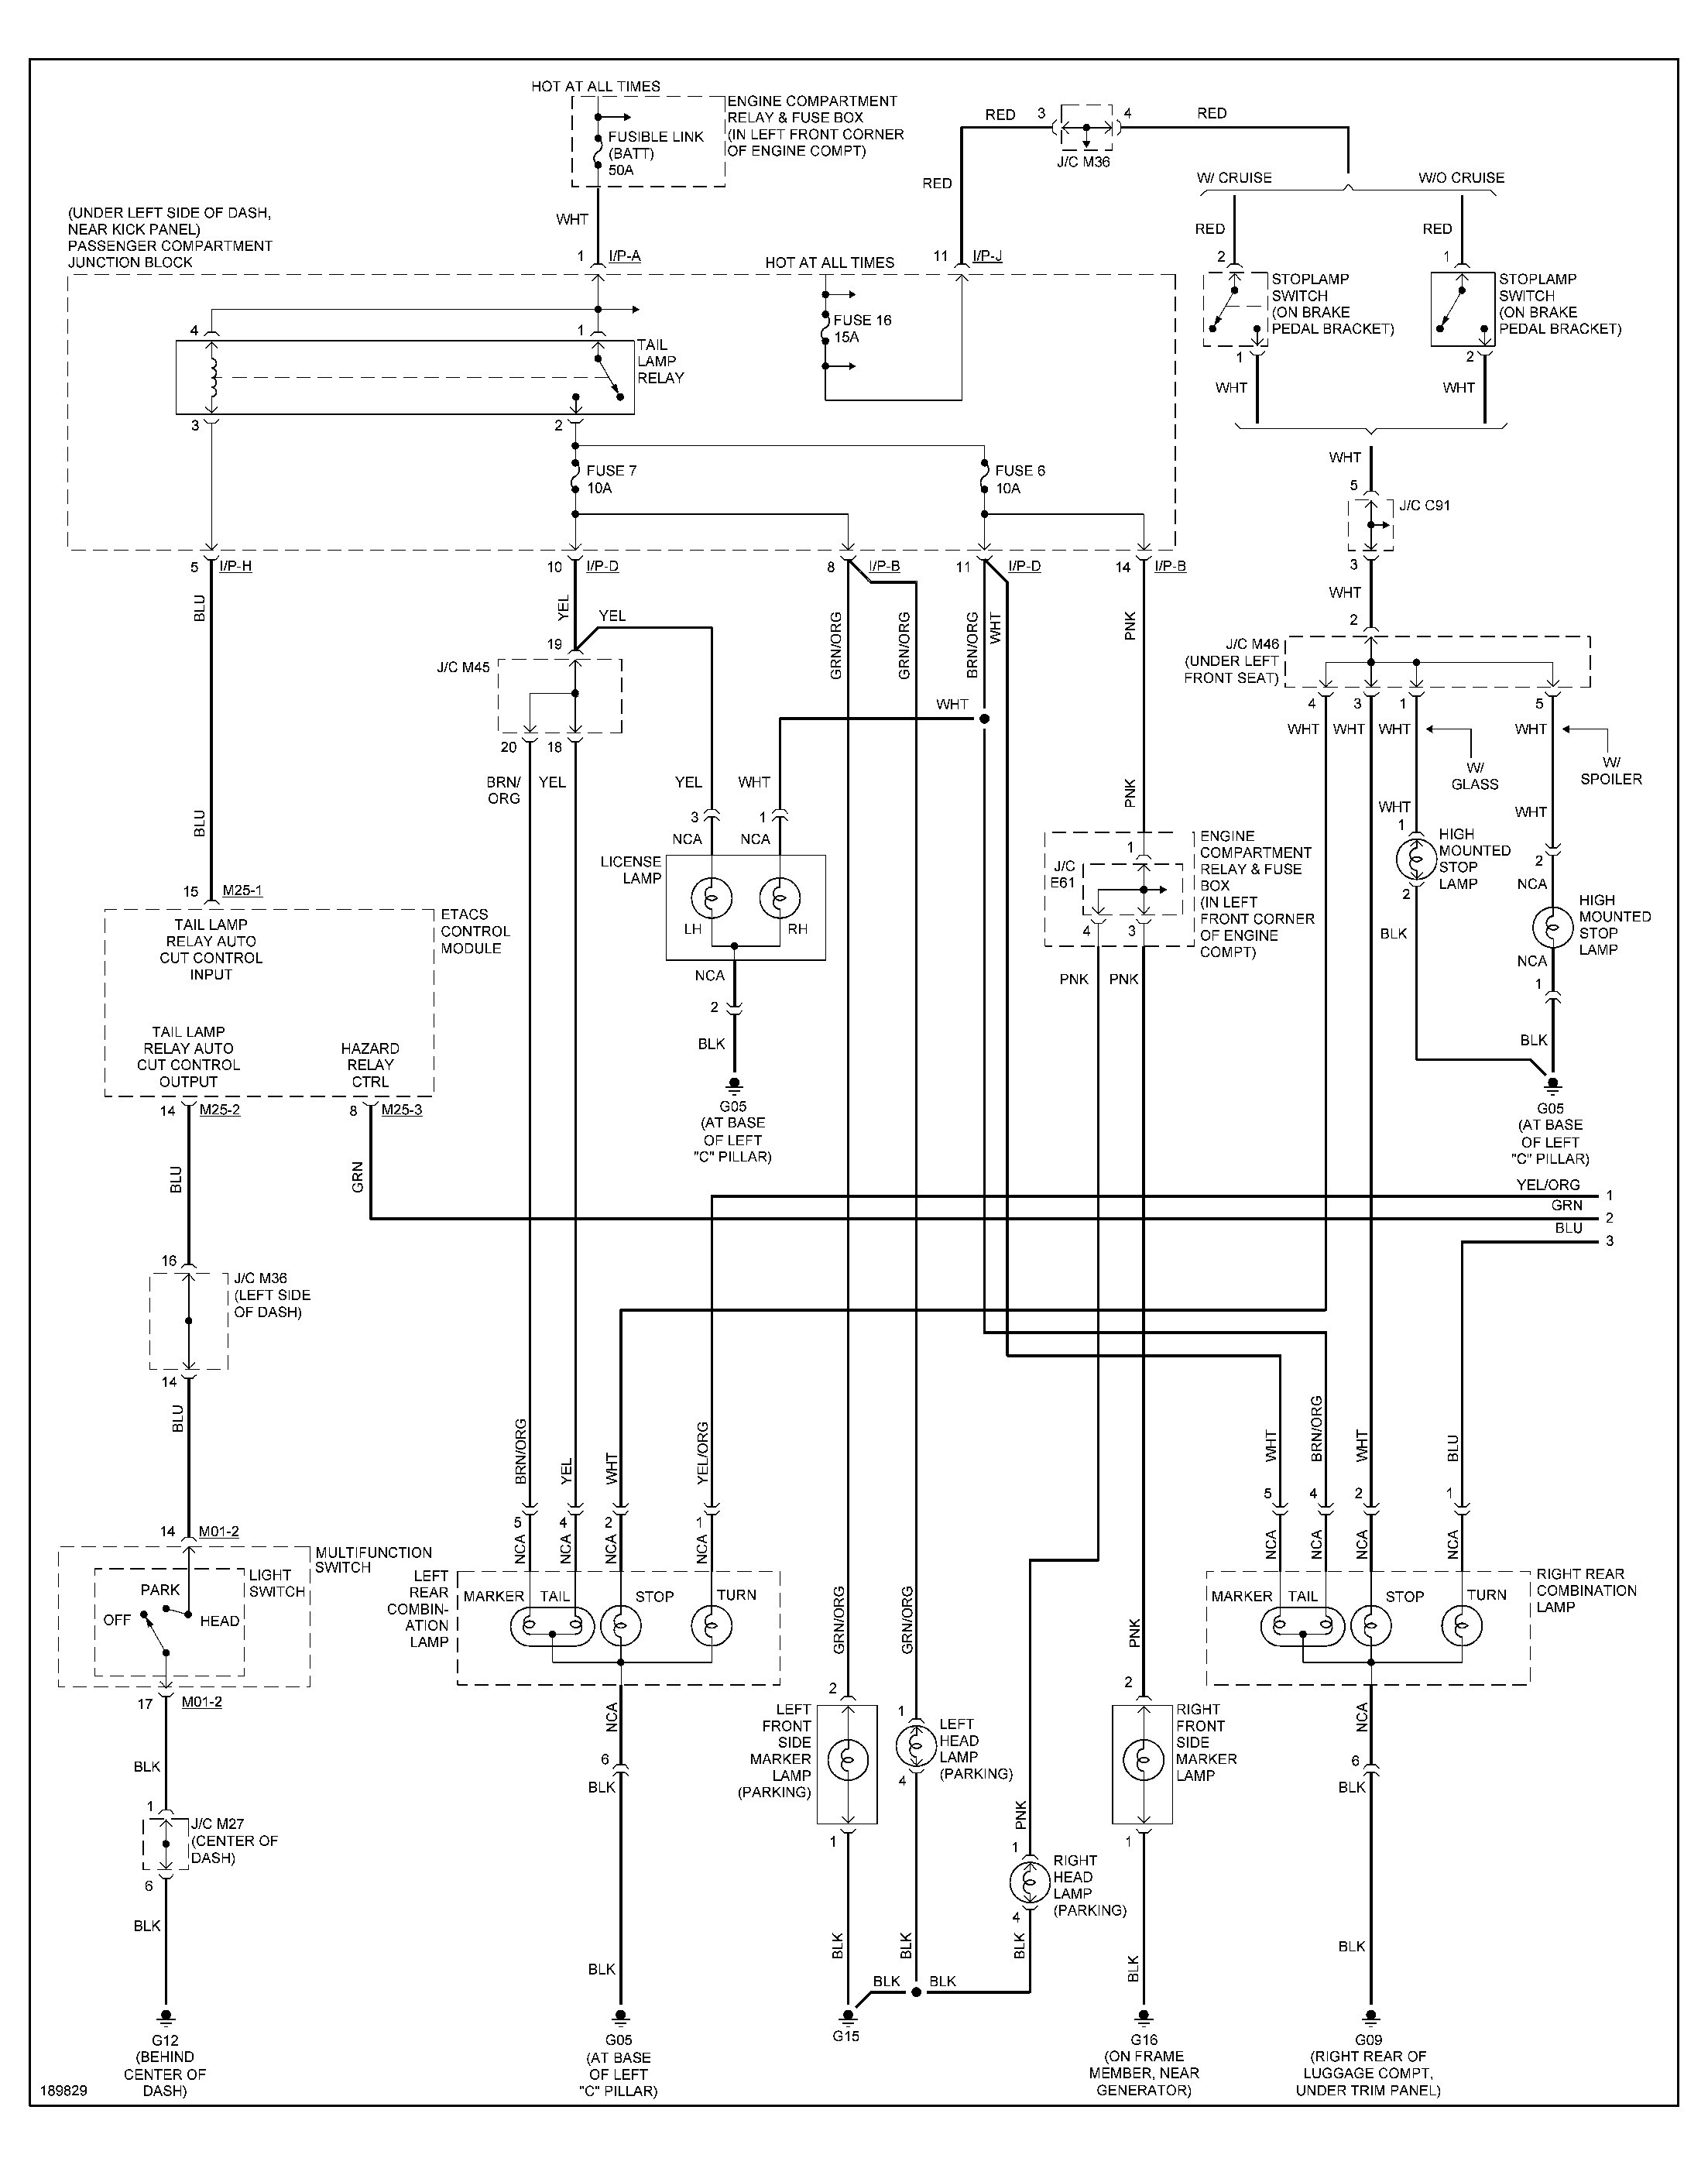 2002 Hyundai Elantra Wiring Diagram from detoxicrecenze.com